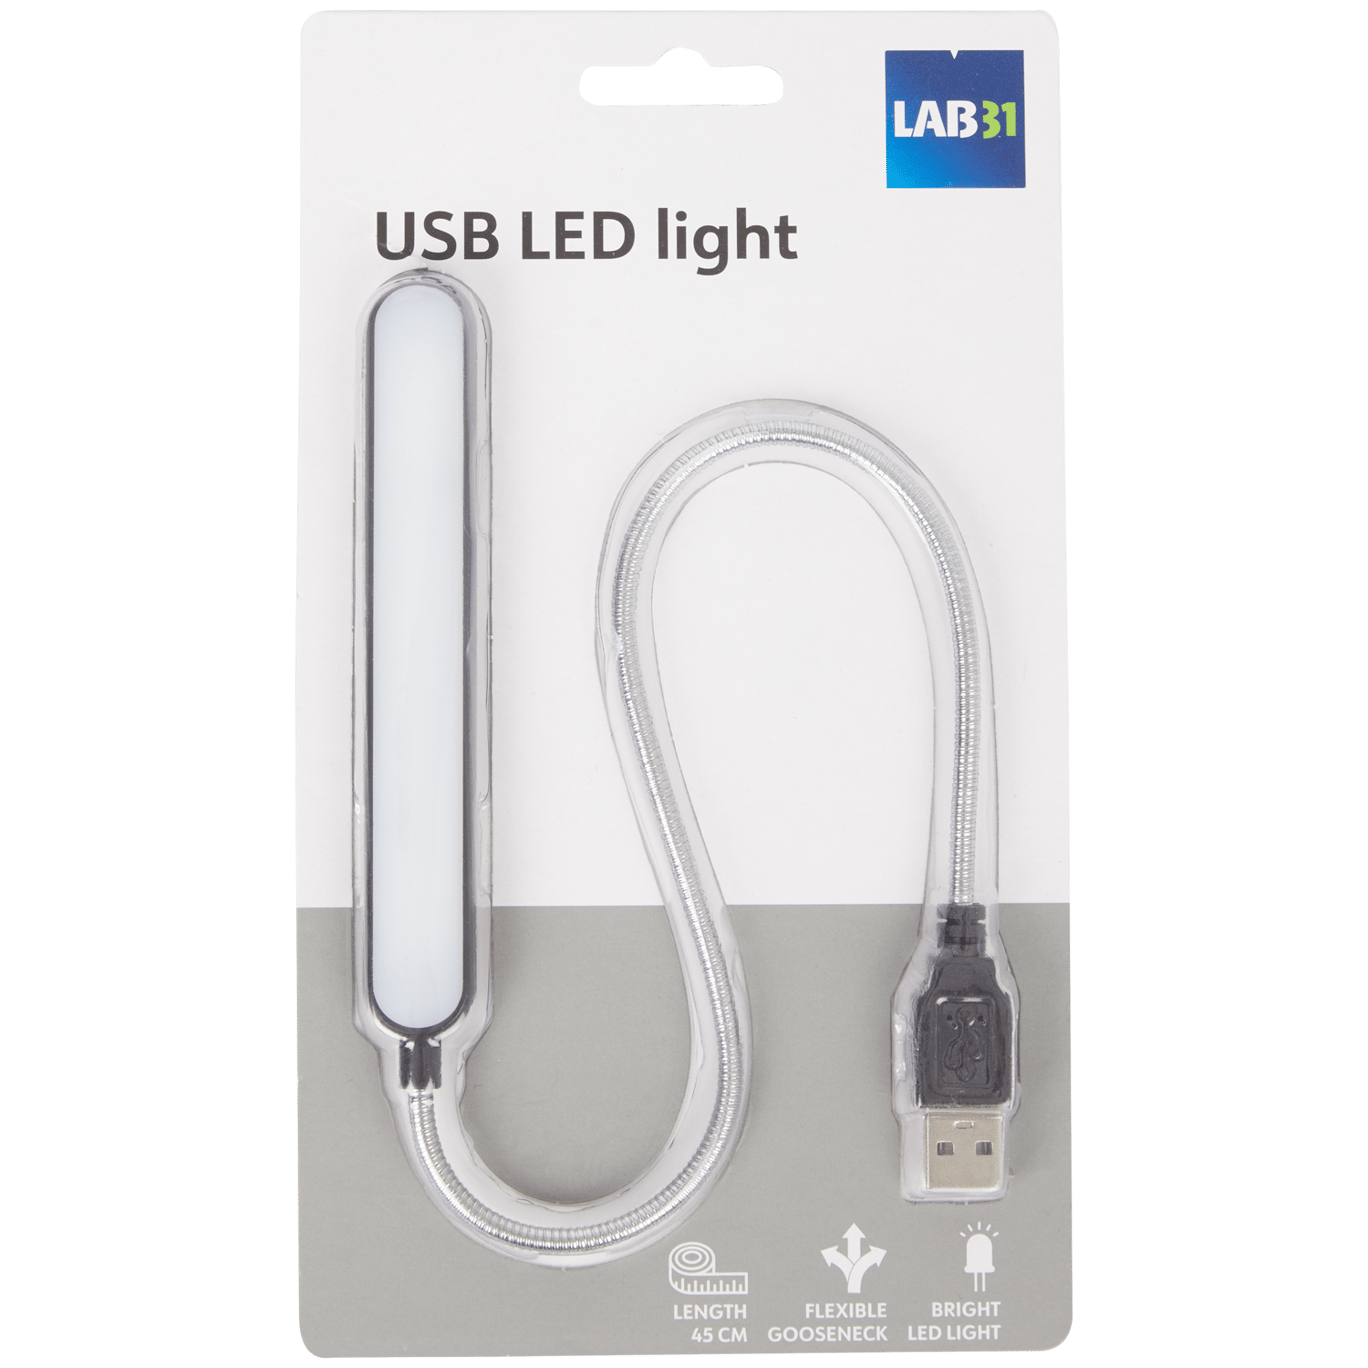 Gewend gans Stimulans Lab31 USB-ledlamp | Action.com